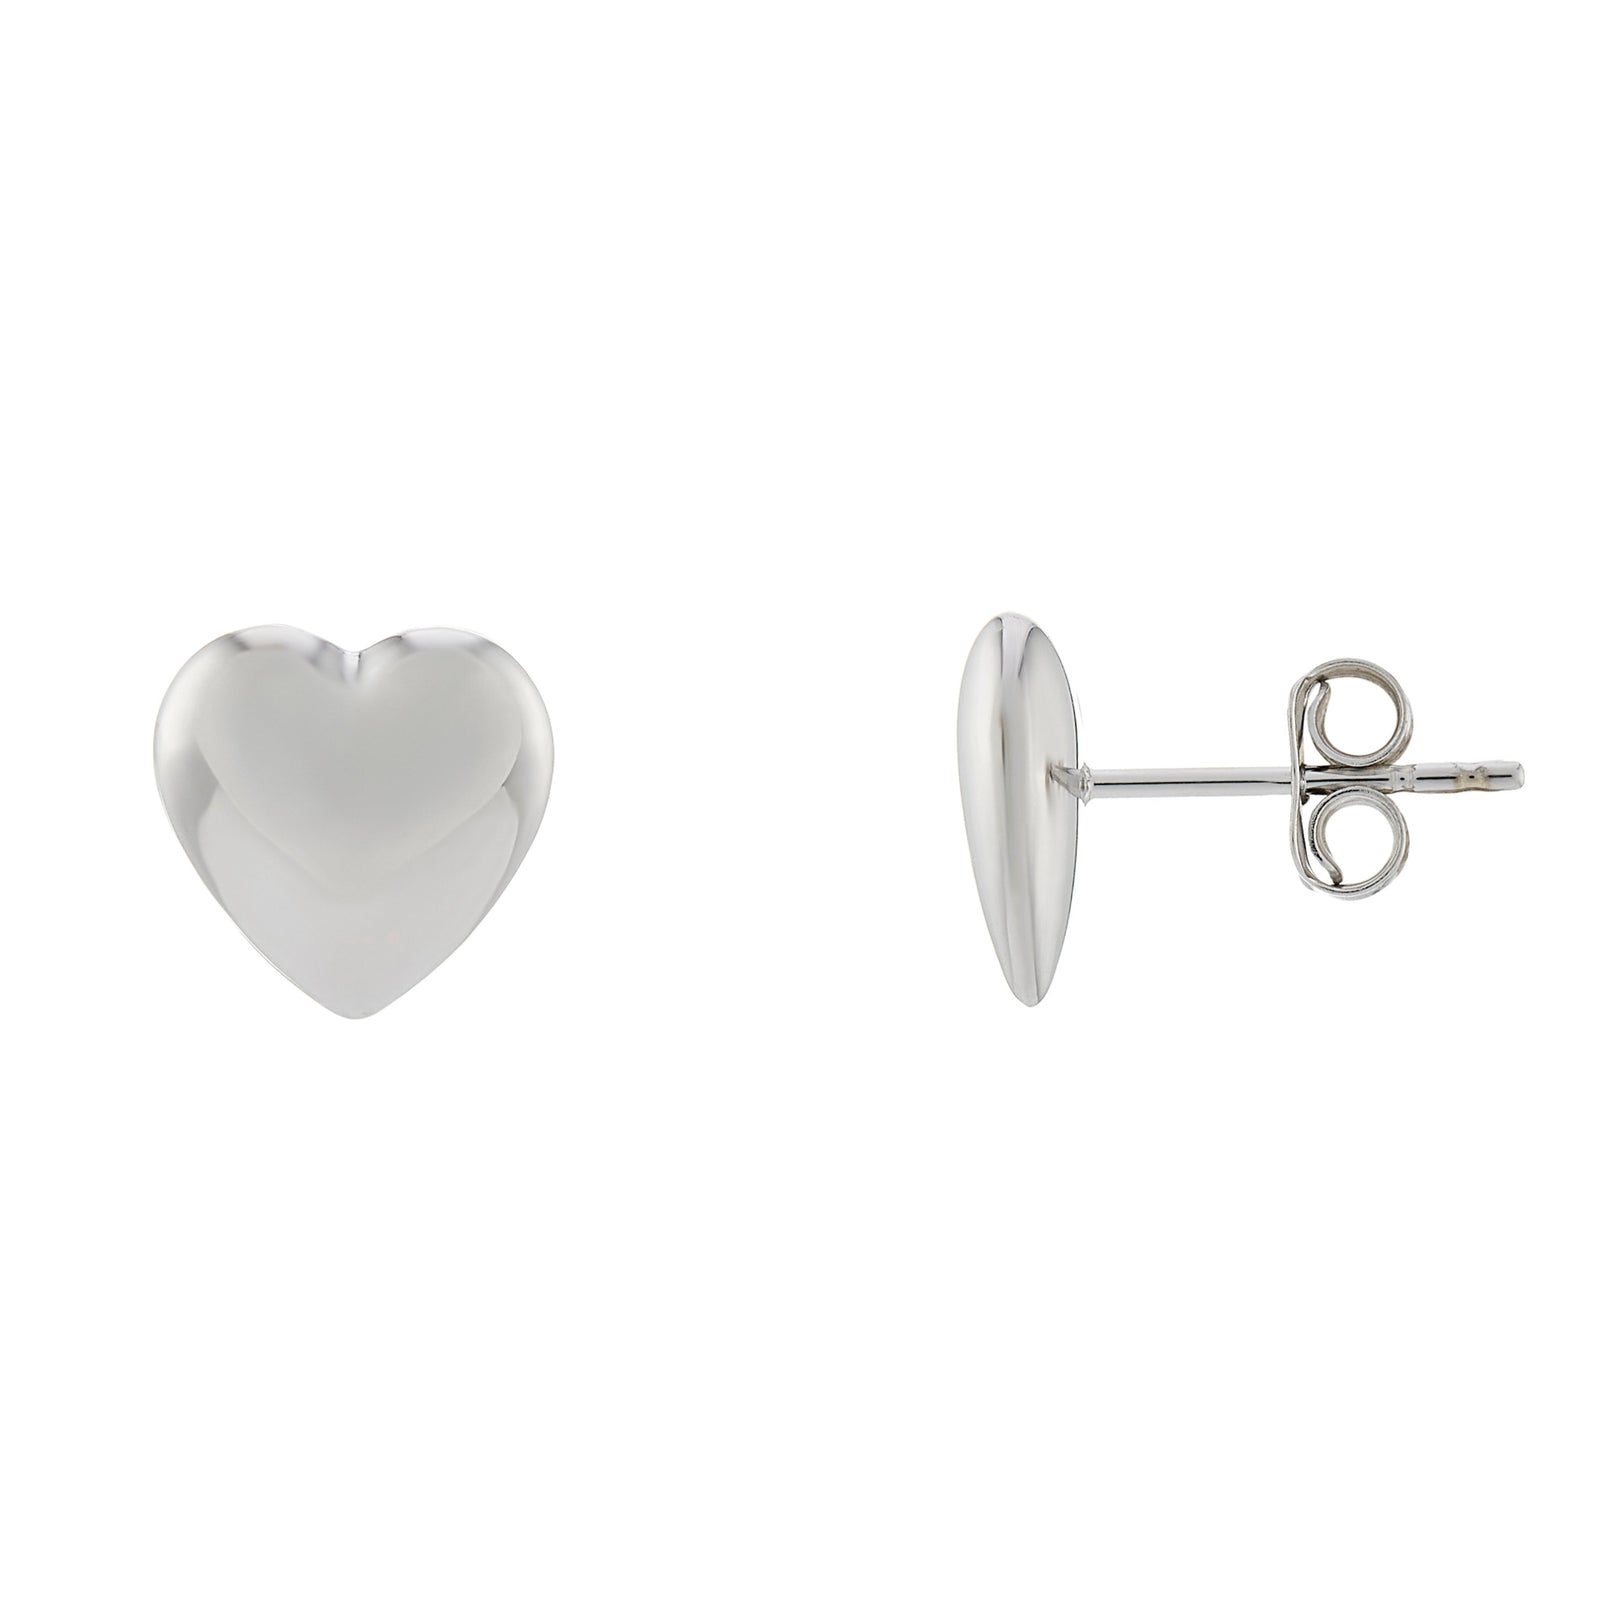 9ct white gold 10mm plain heart stud earrings